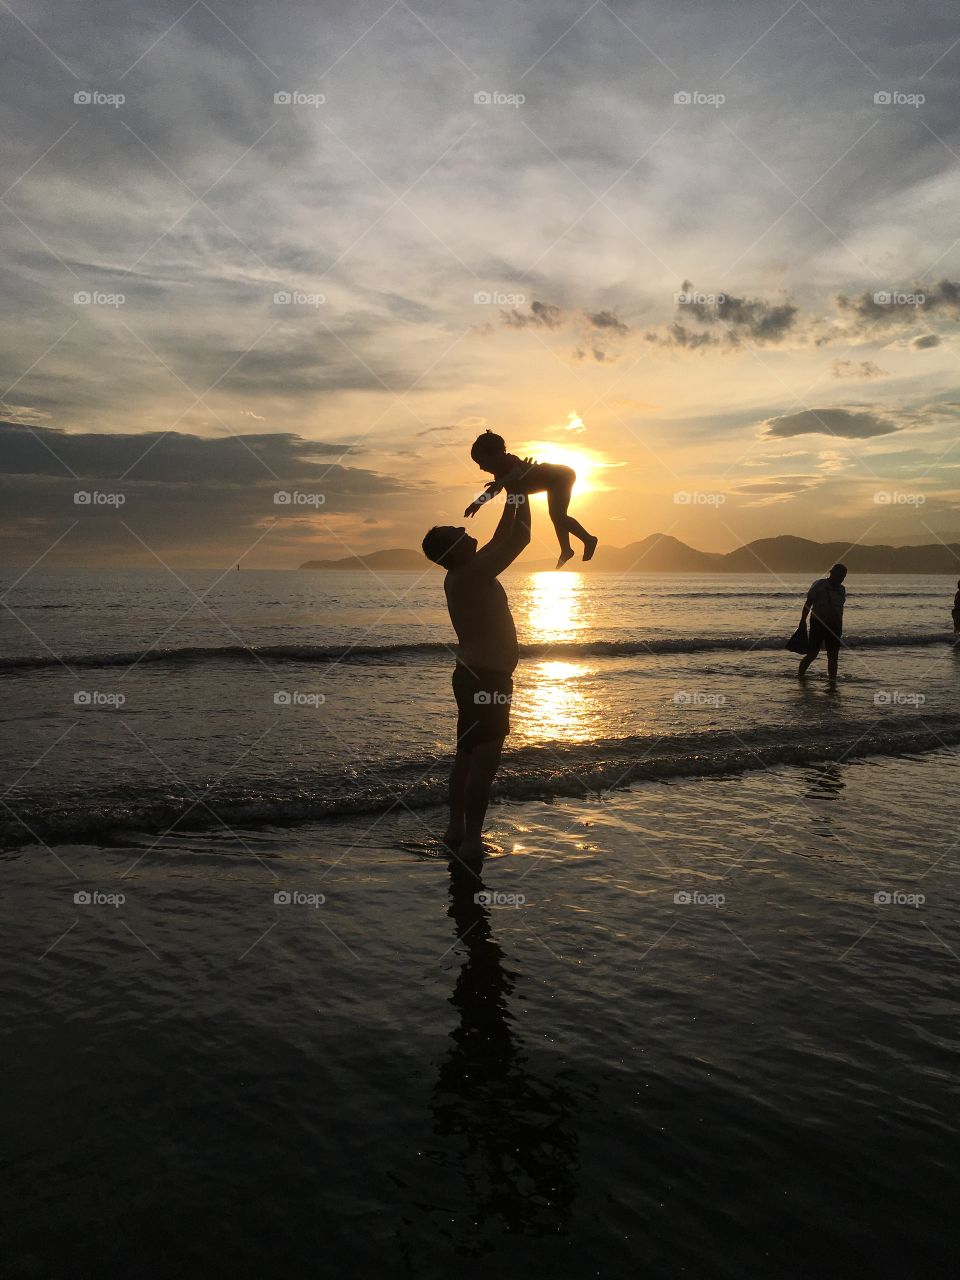 FOAP MISSIONS: 2019 in photos - Foi um ano de alegria, vivendo com minha filha na praia de Santos, litoral do Brasil. 